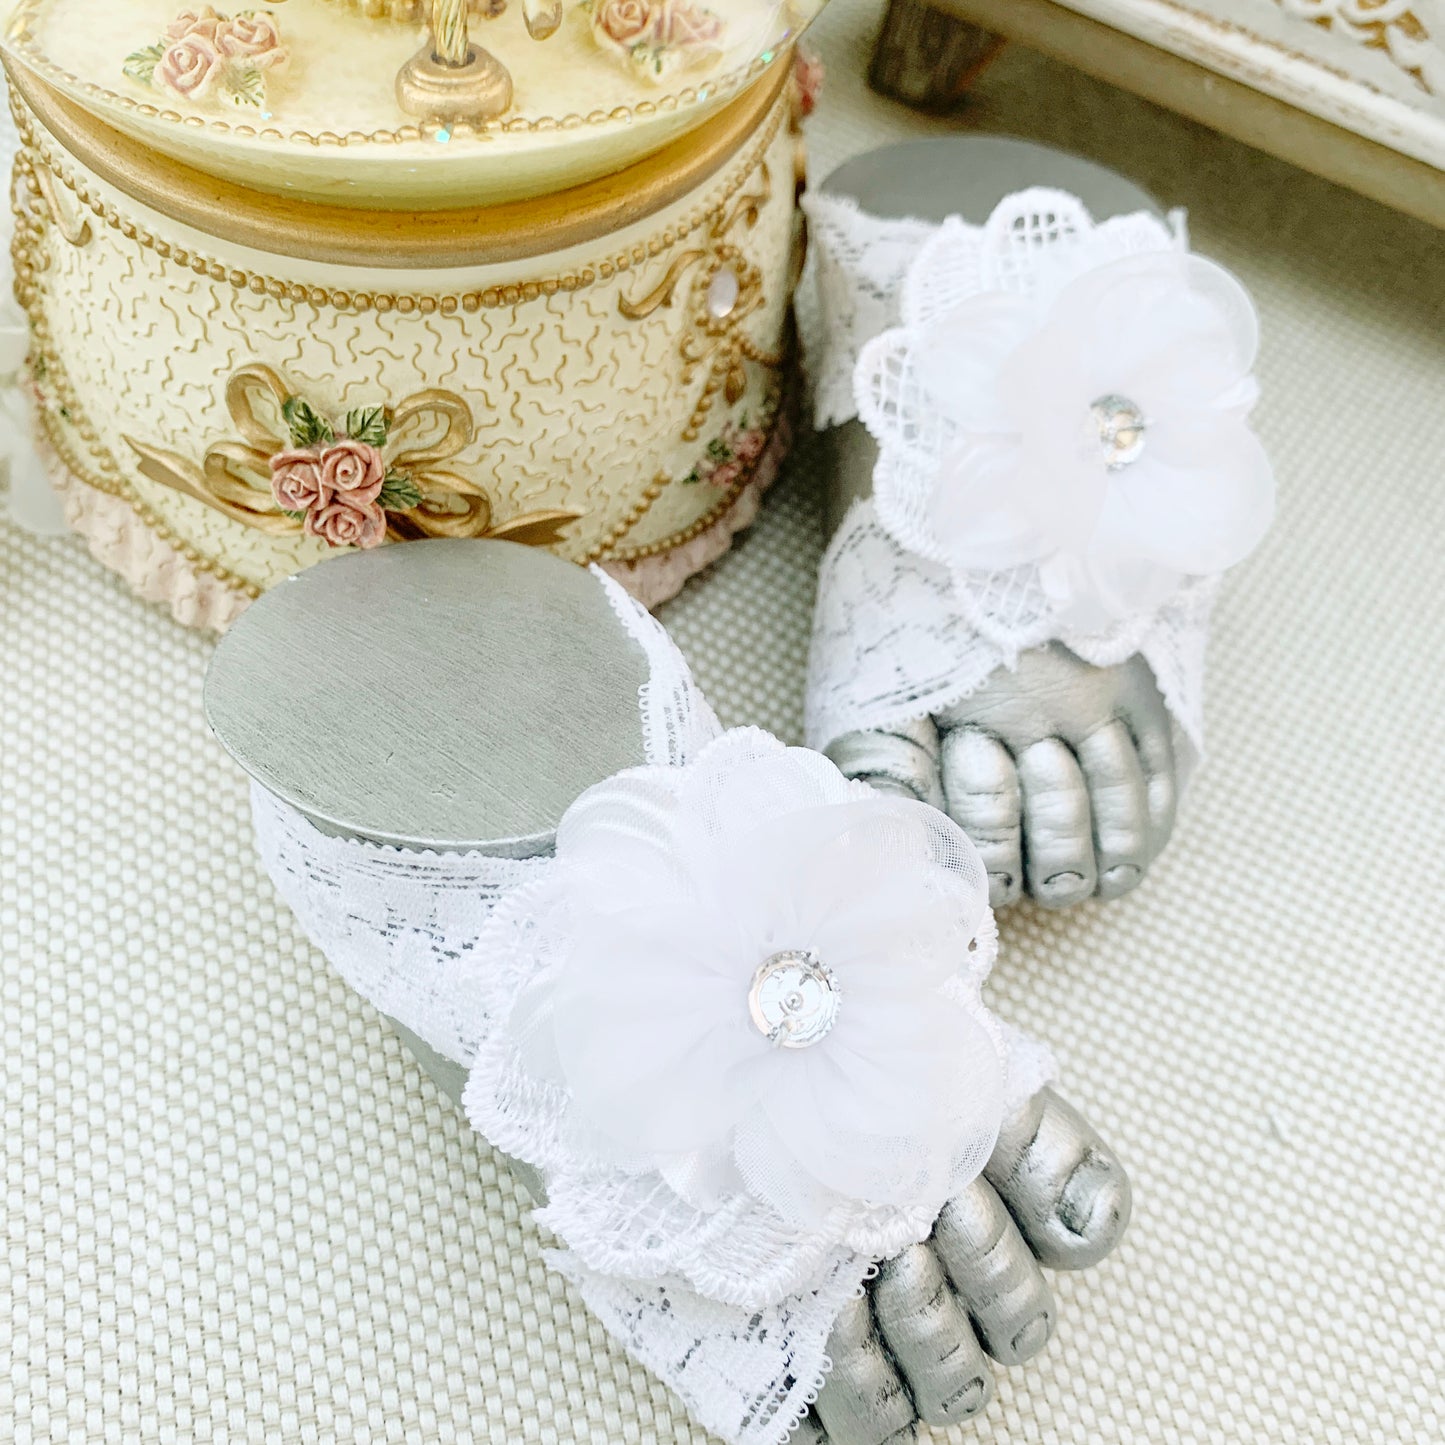 Pies descalzos con flor de organza y chispa